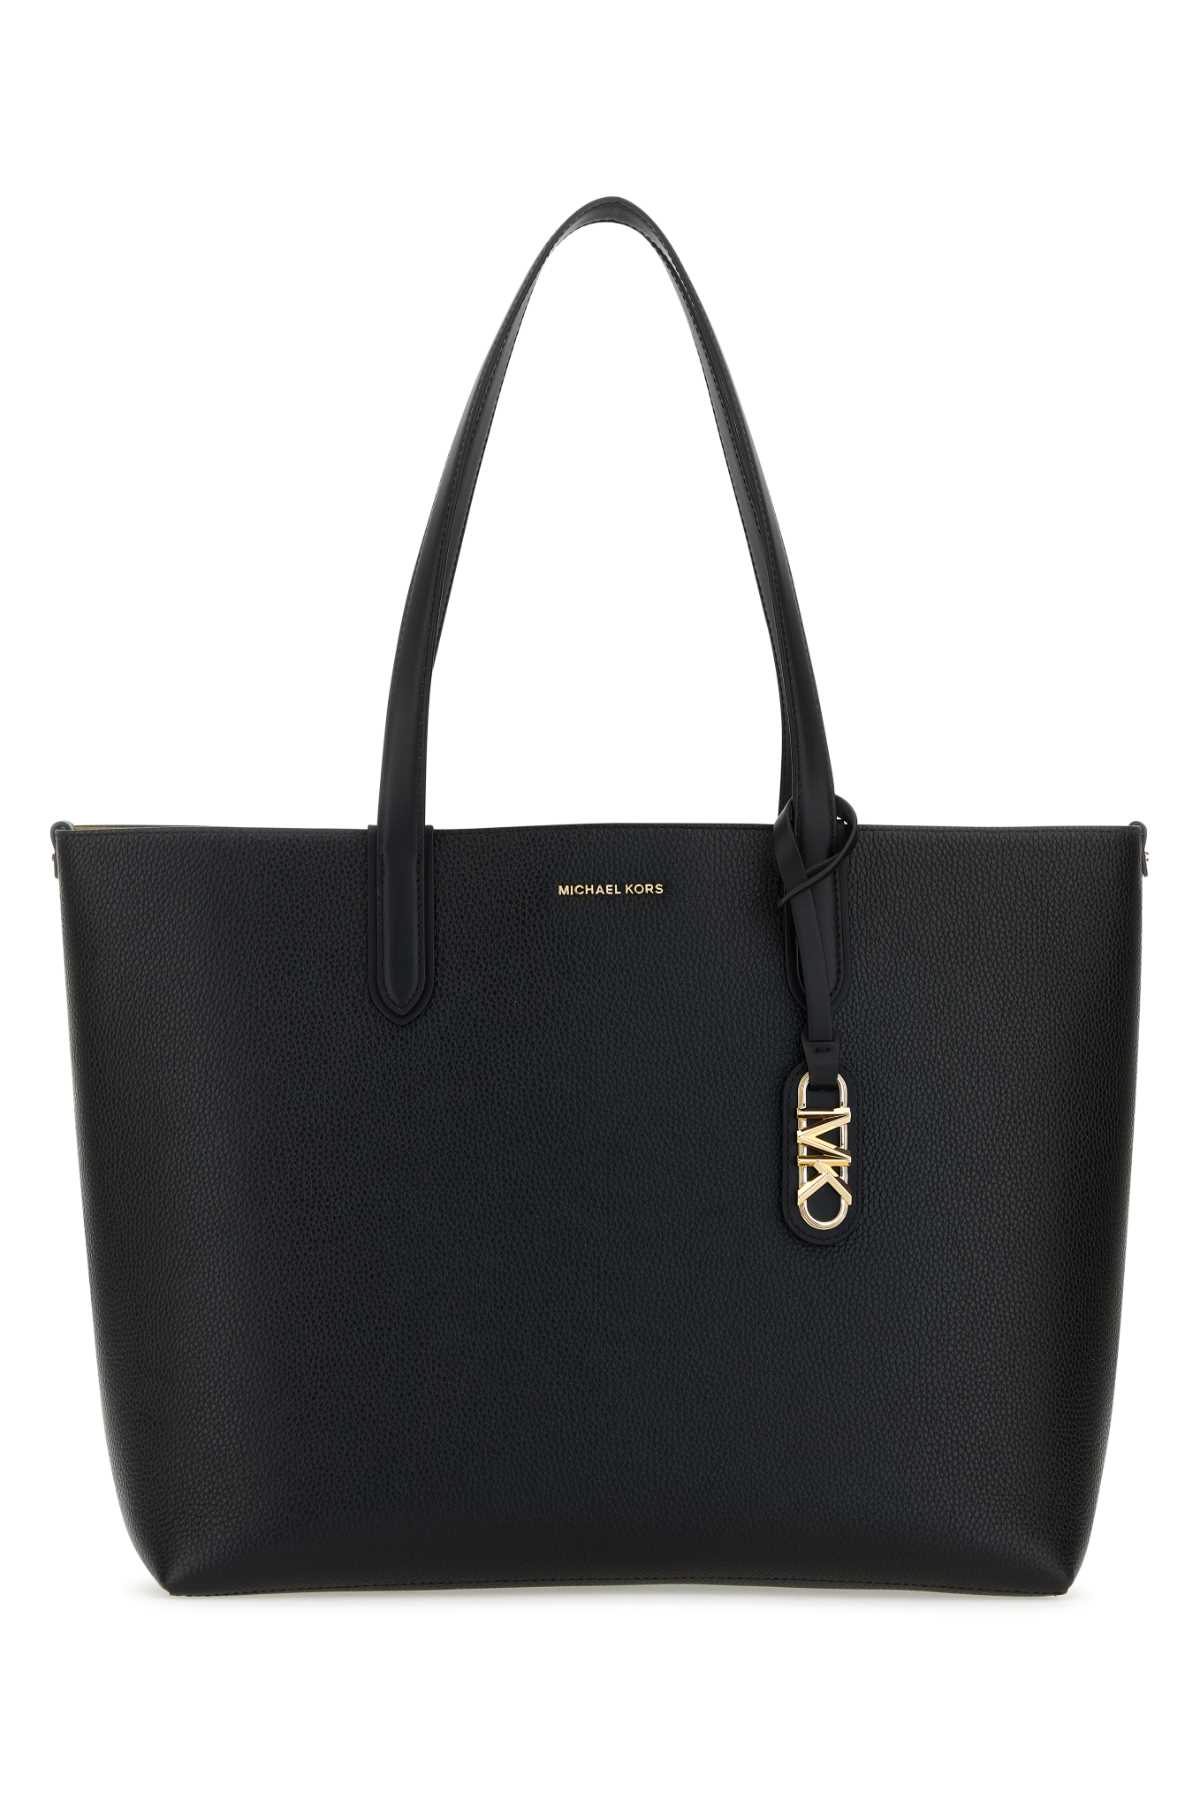 Michael Kors Black Leather Extra-large Eliza Shopping Bag